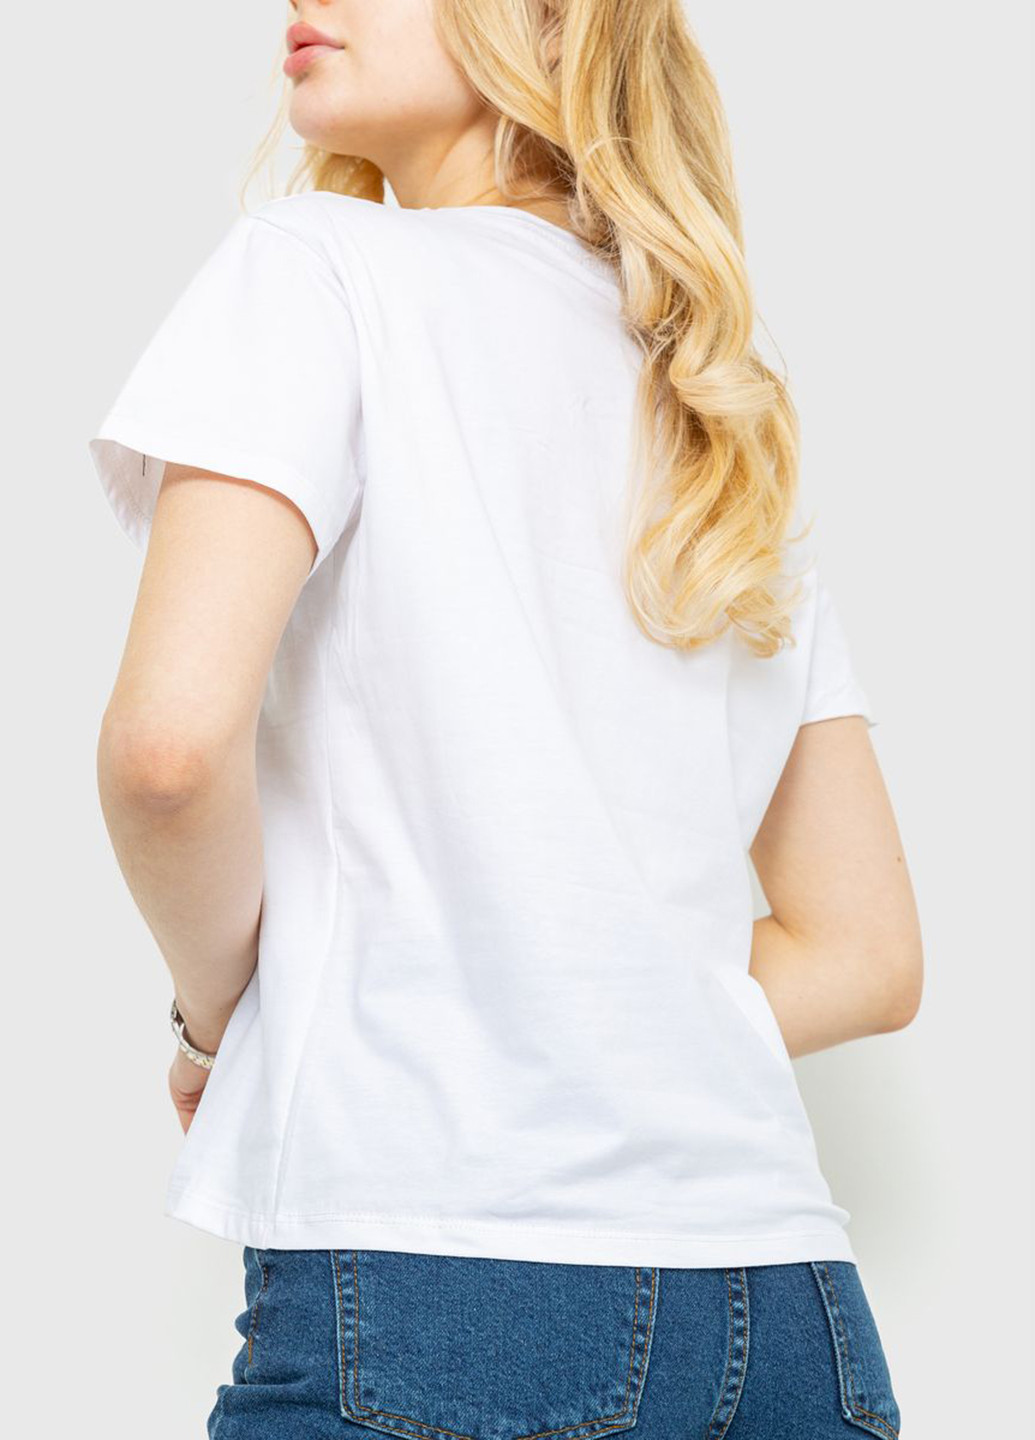 Белая летняя футболка Ager